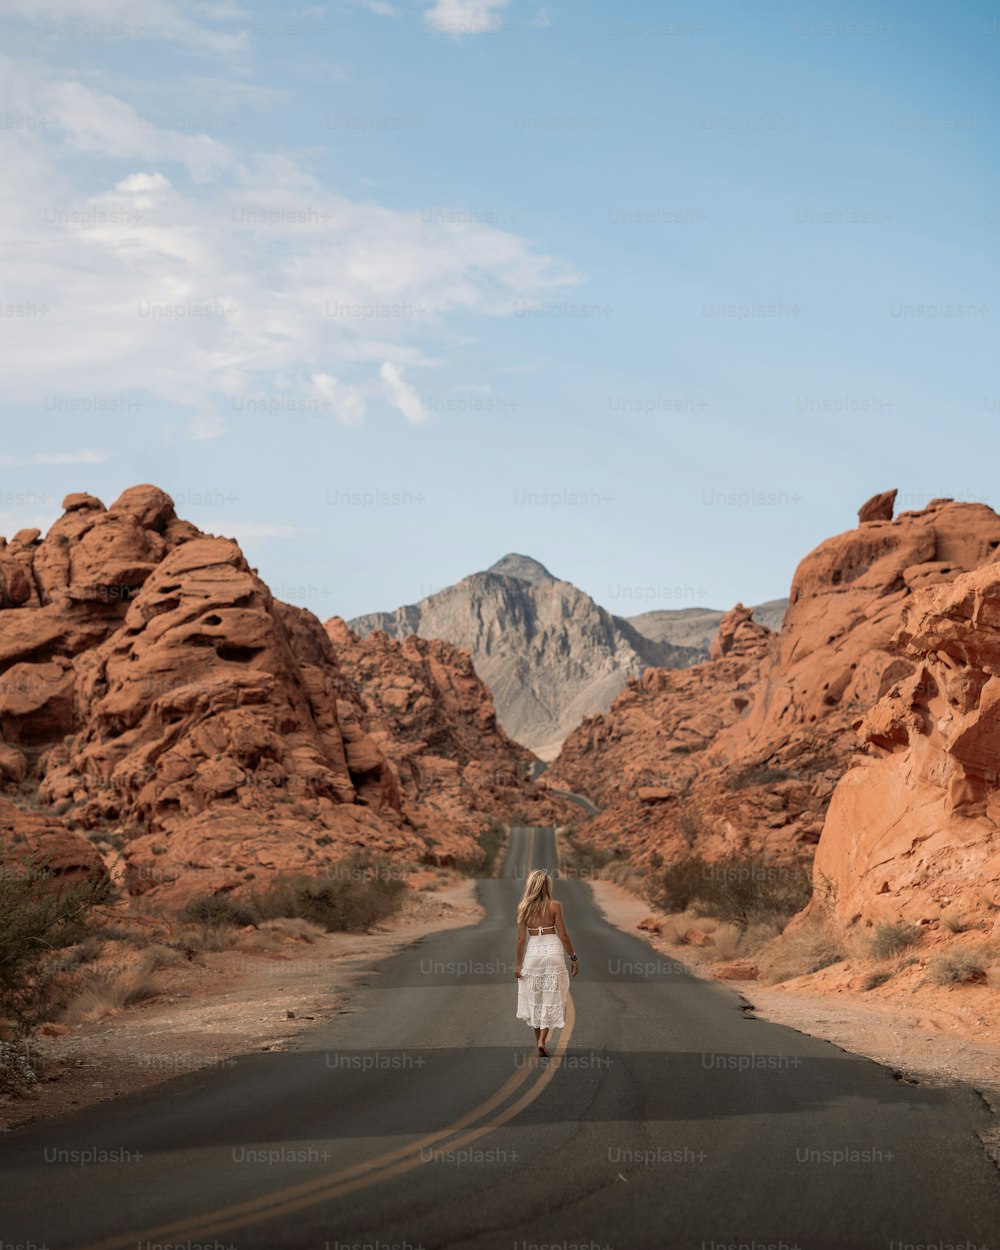 Eine Person, die auf einer Straße in der Wüste geht